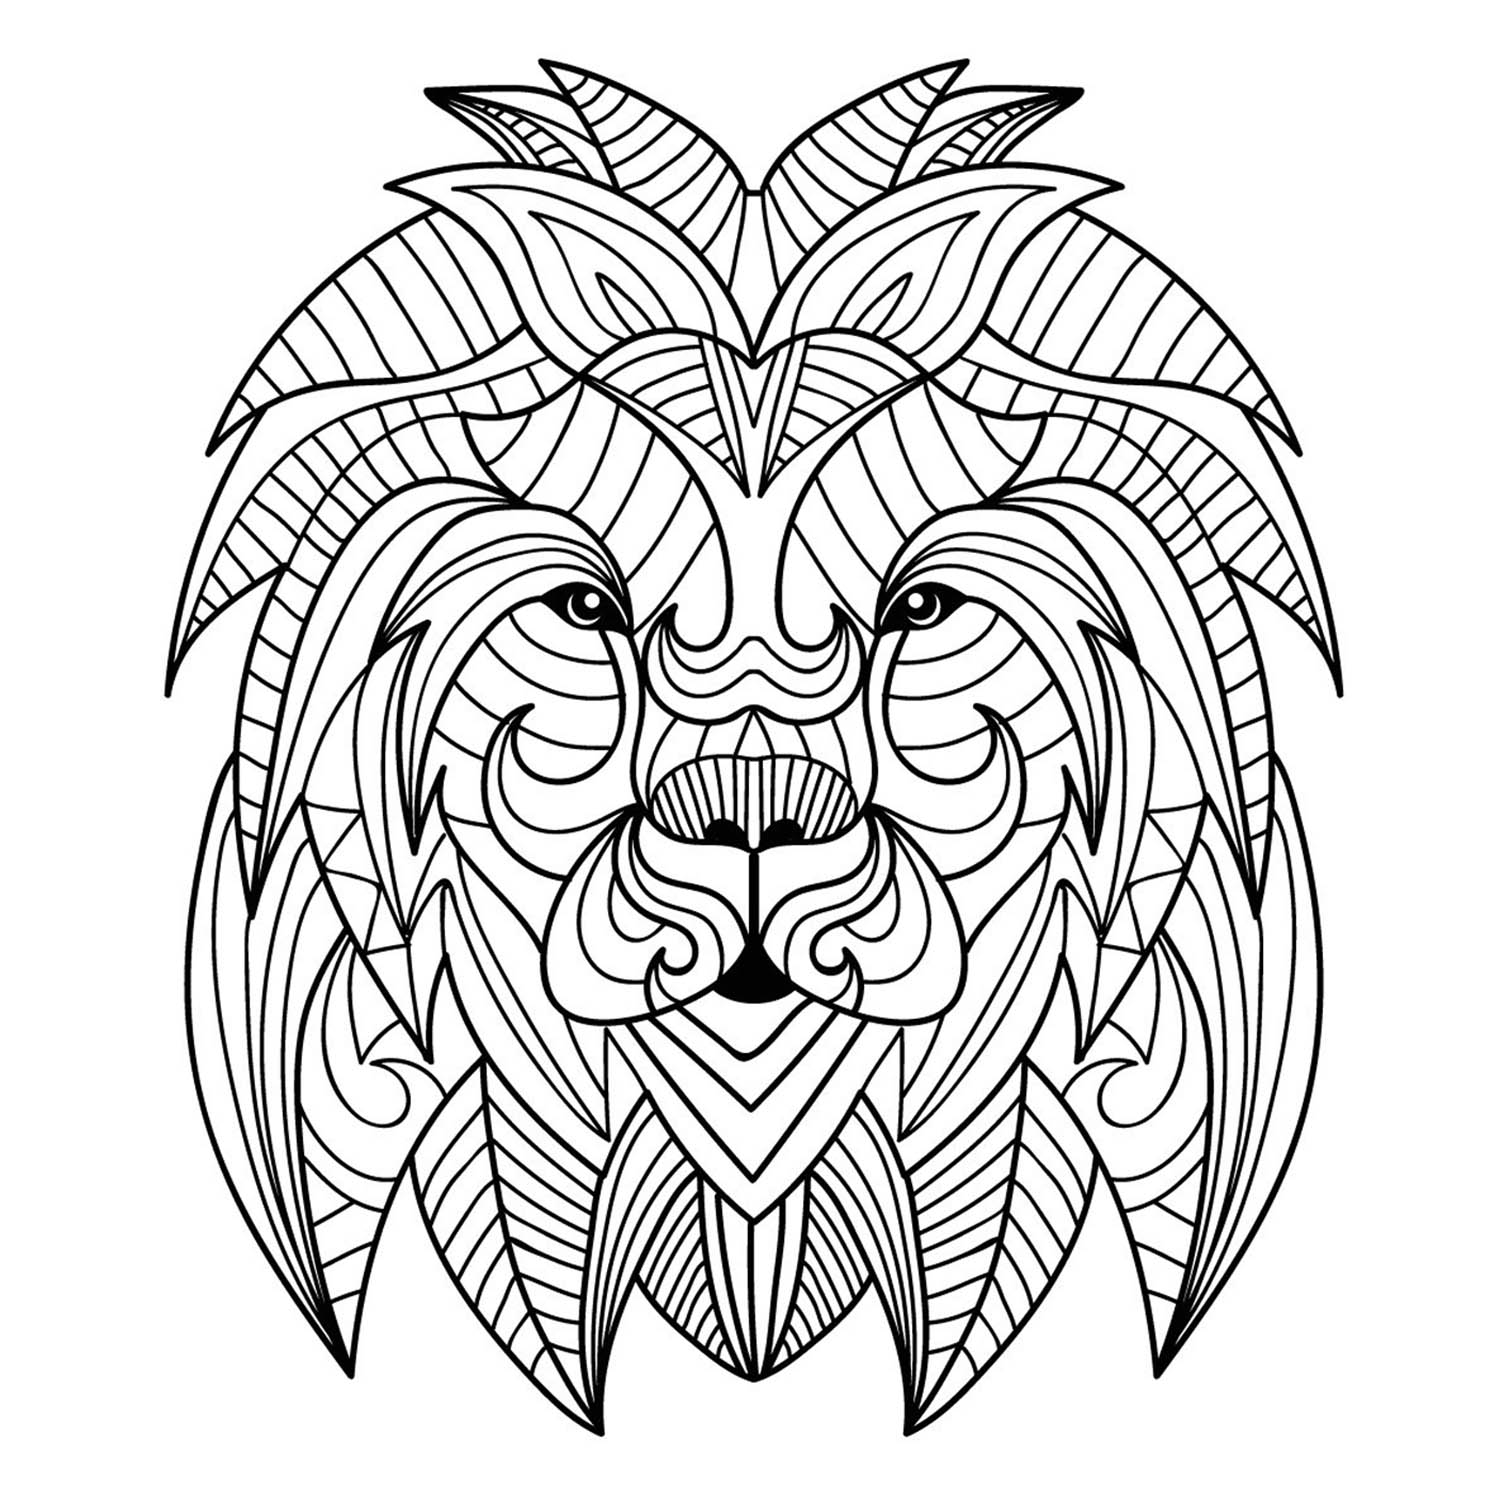 Une jolie tête de lion dans le style mandala, sans fond